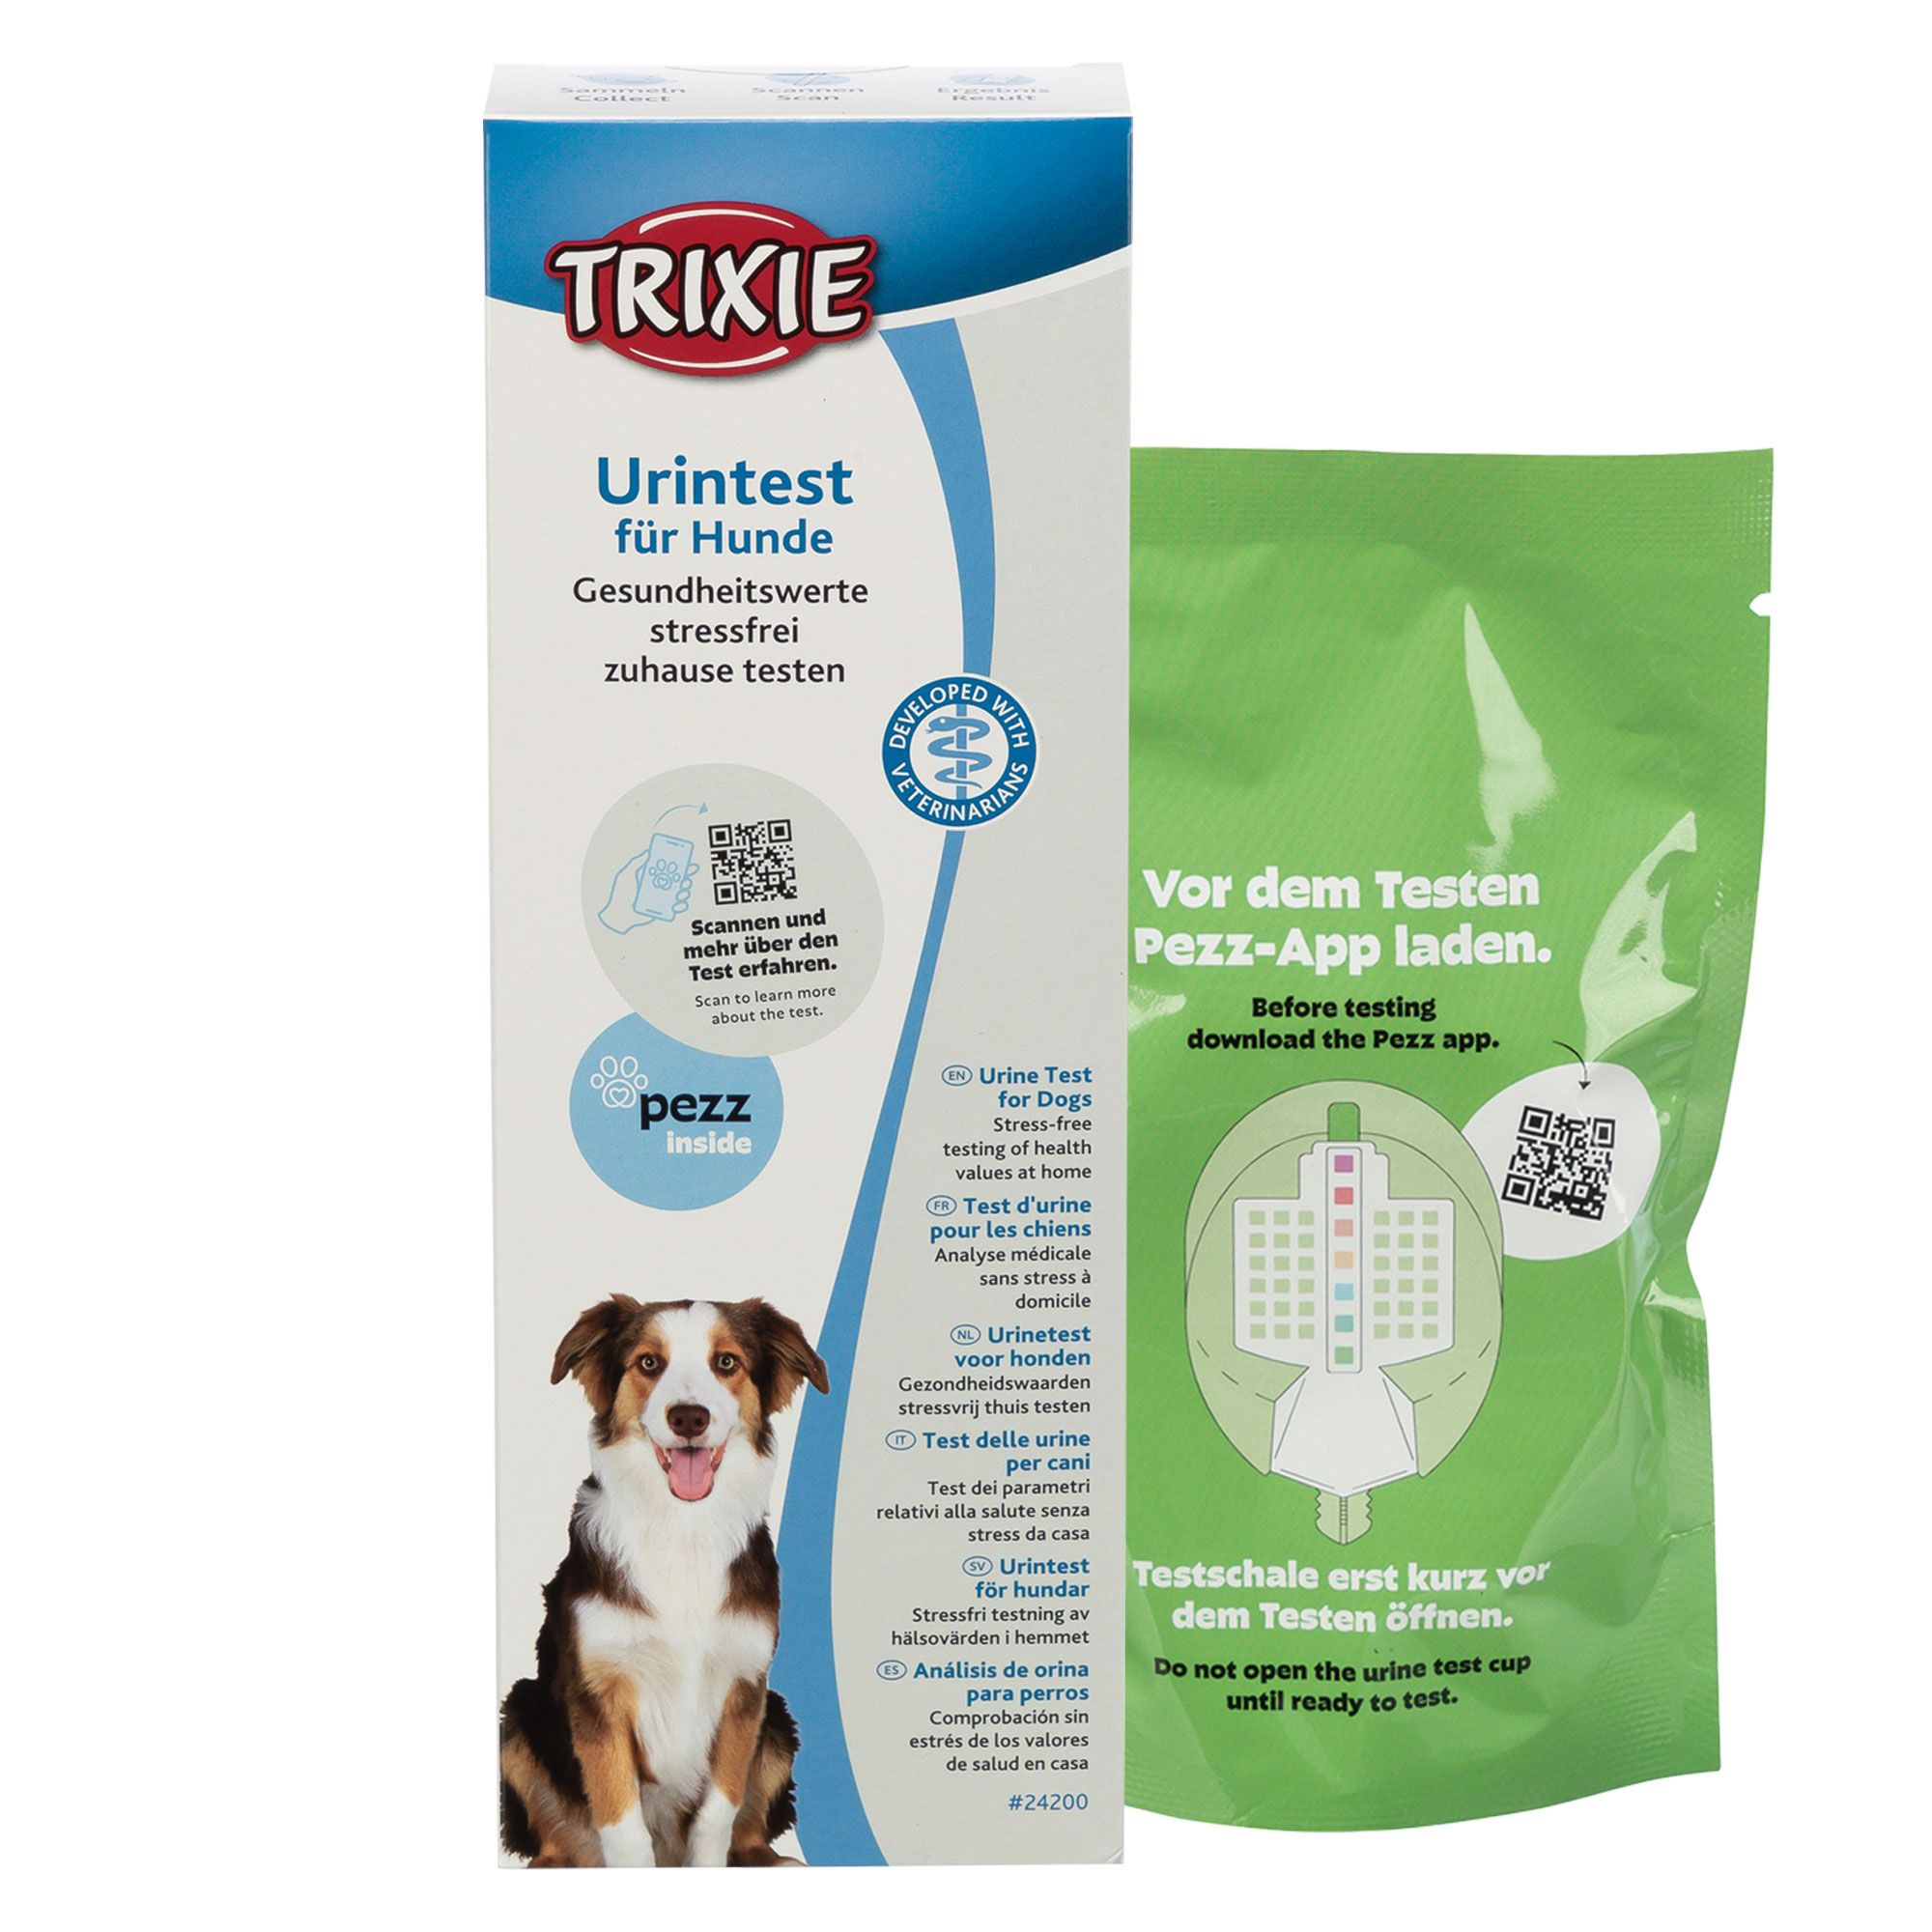 Schecker Gesundheit - Urintest Kit für Hunde